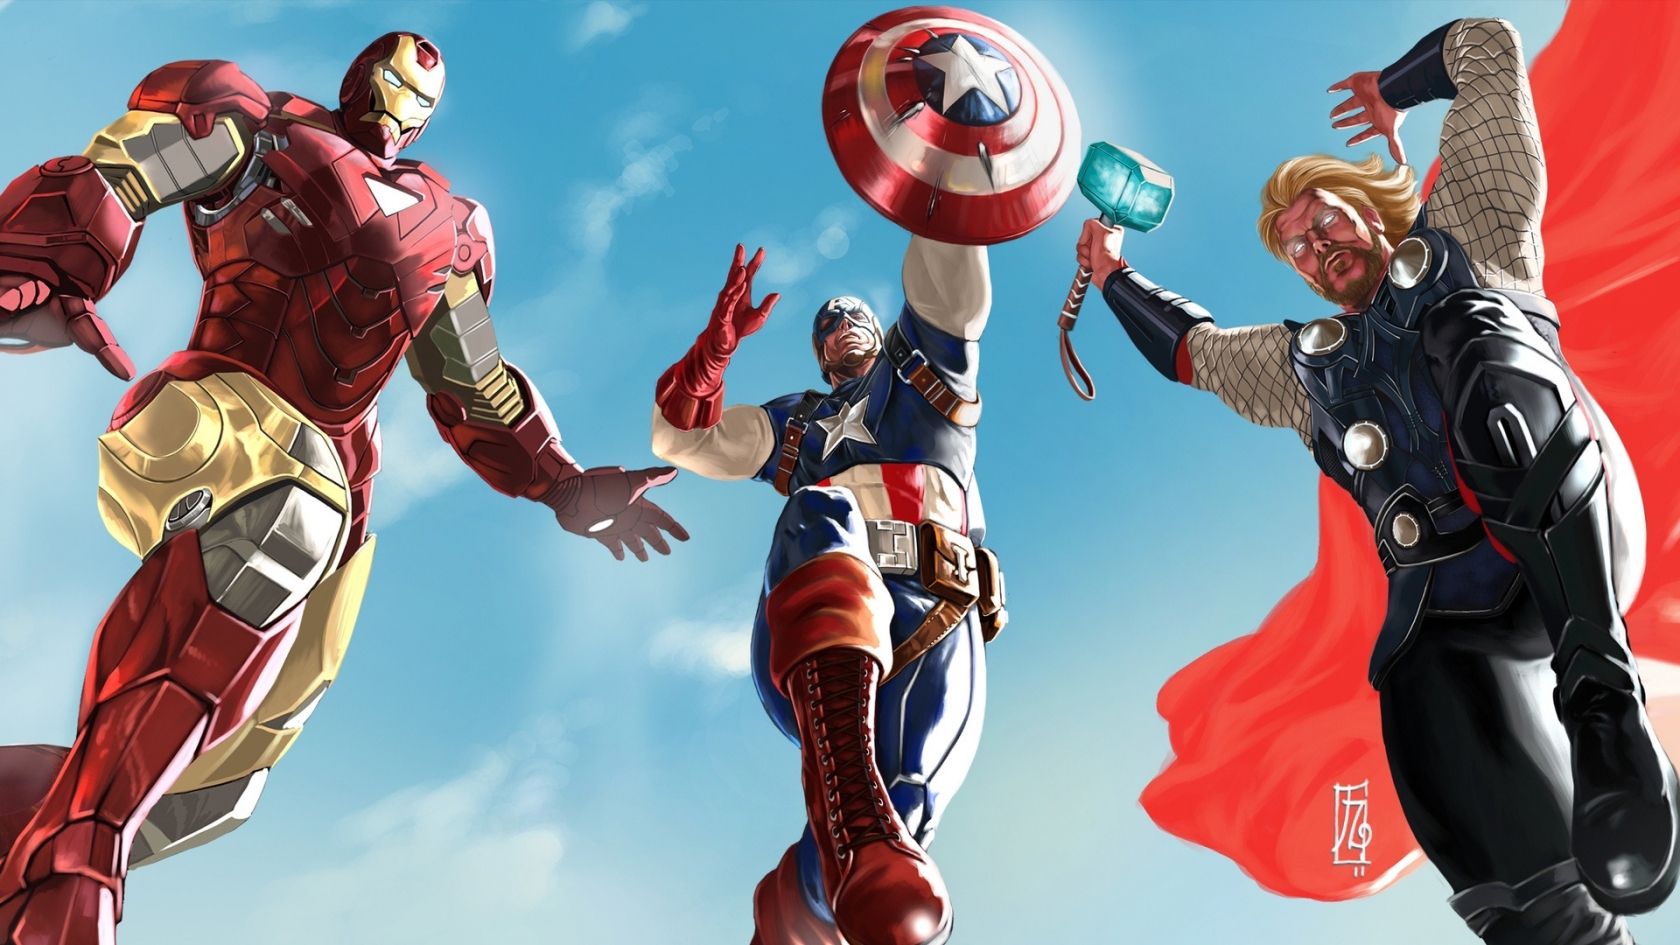 The Avengers 2012 for 1680 x 945 HDTV resolution